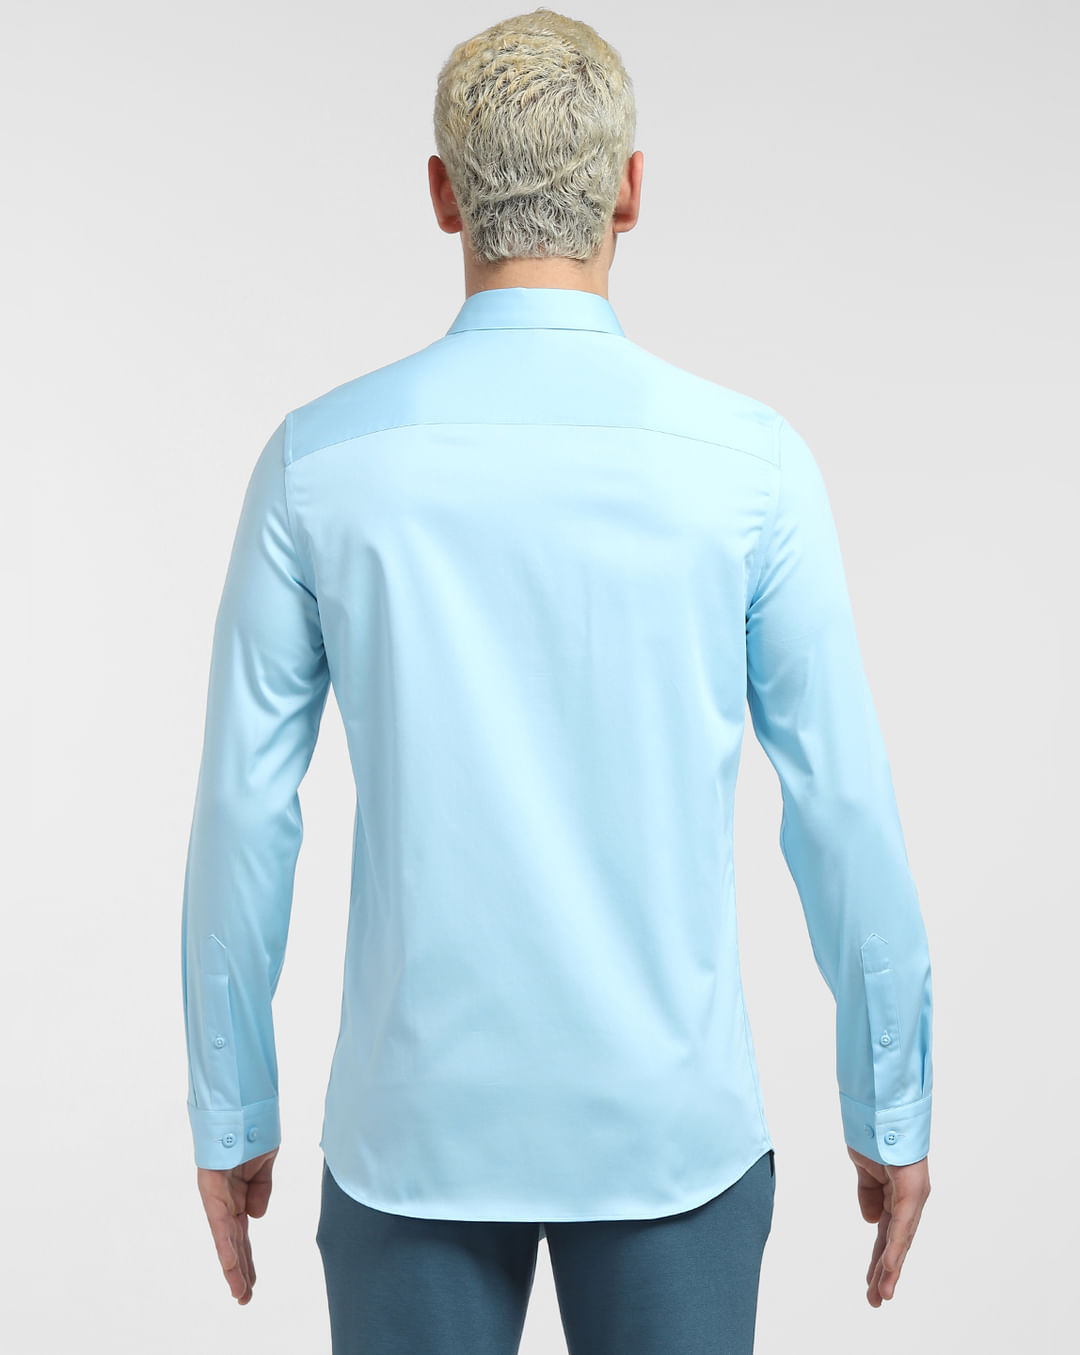 Buy Sky Blue Full Sleeves Shirt for Men